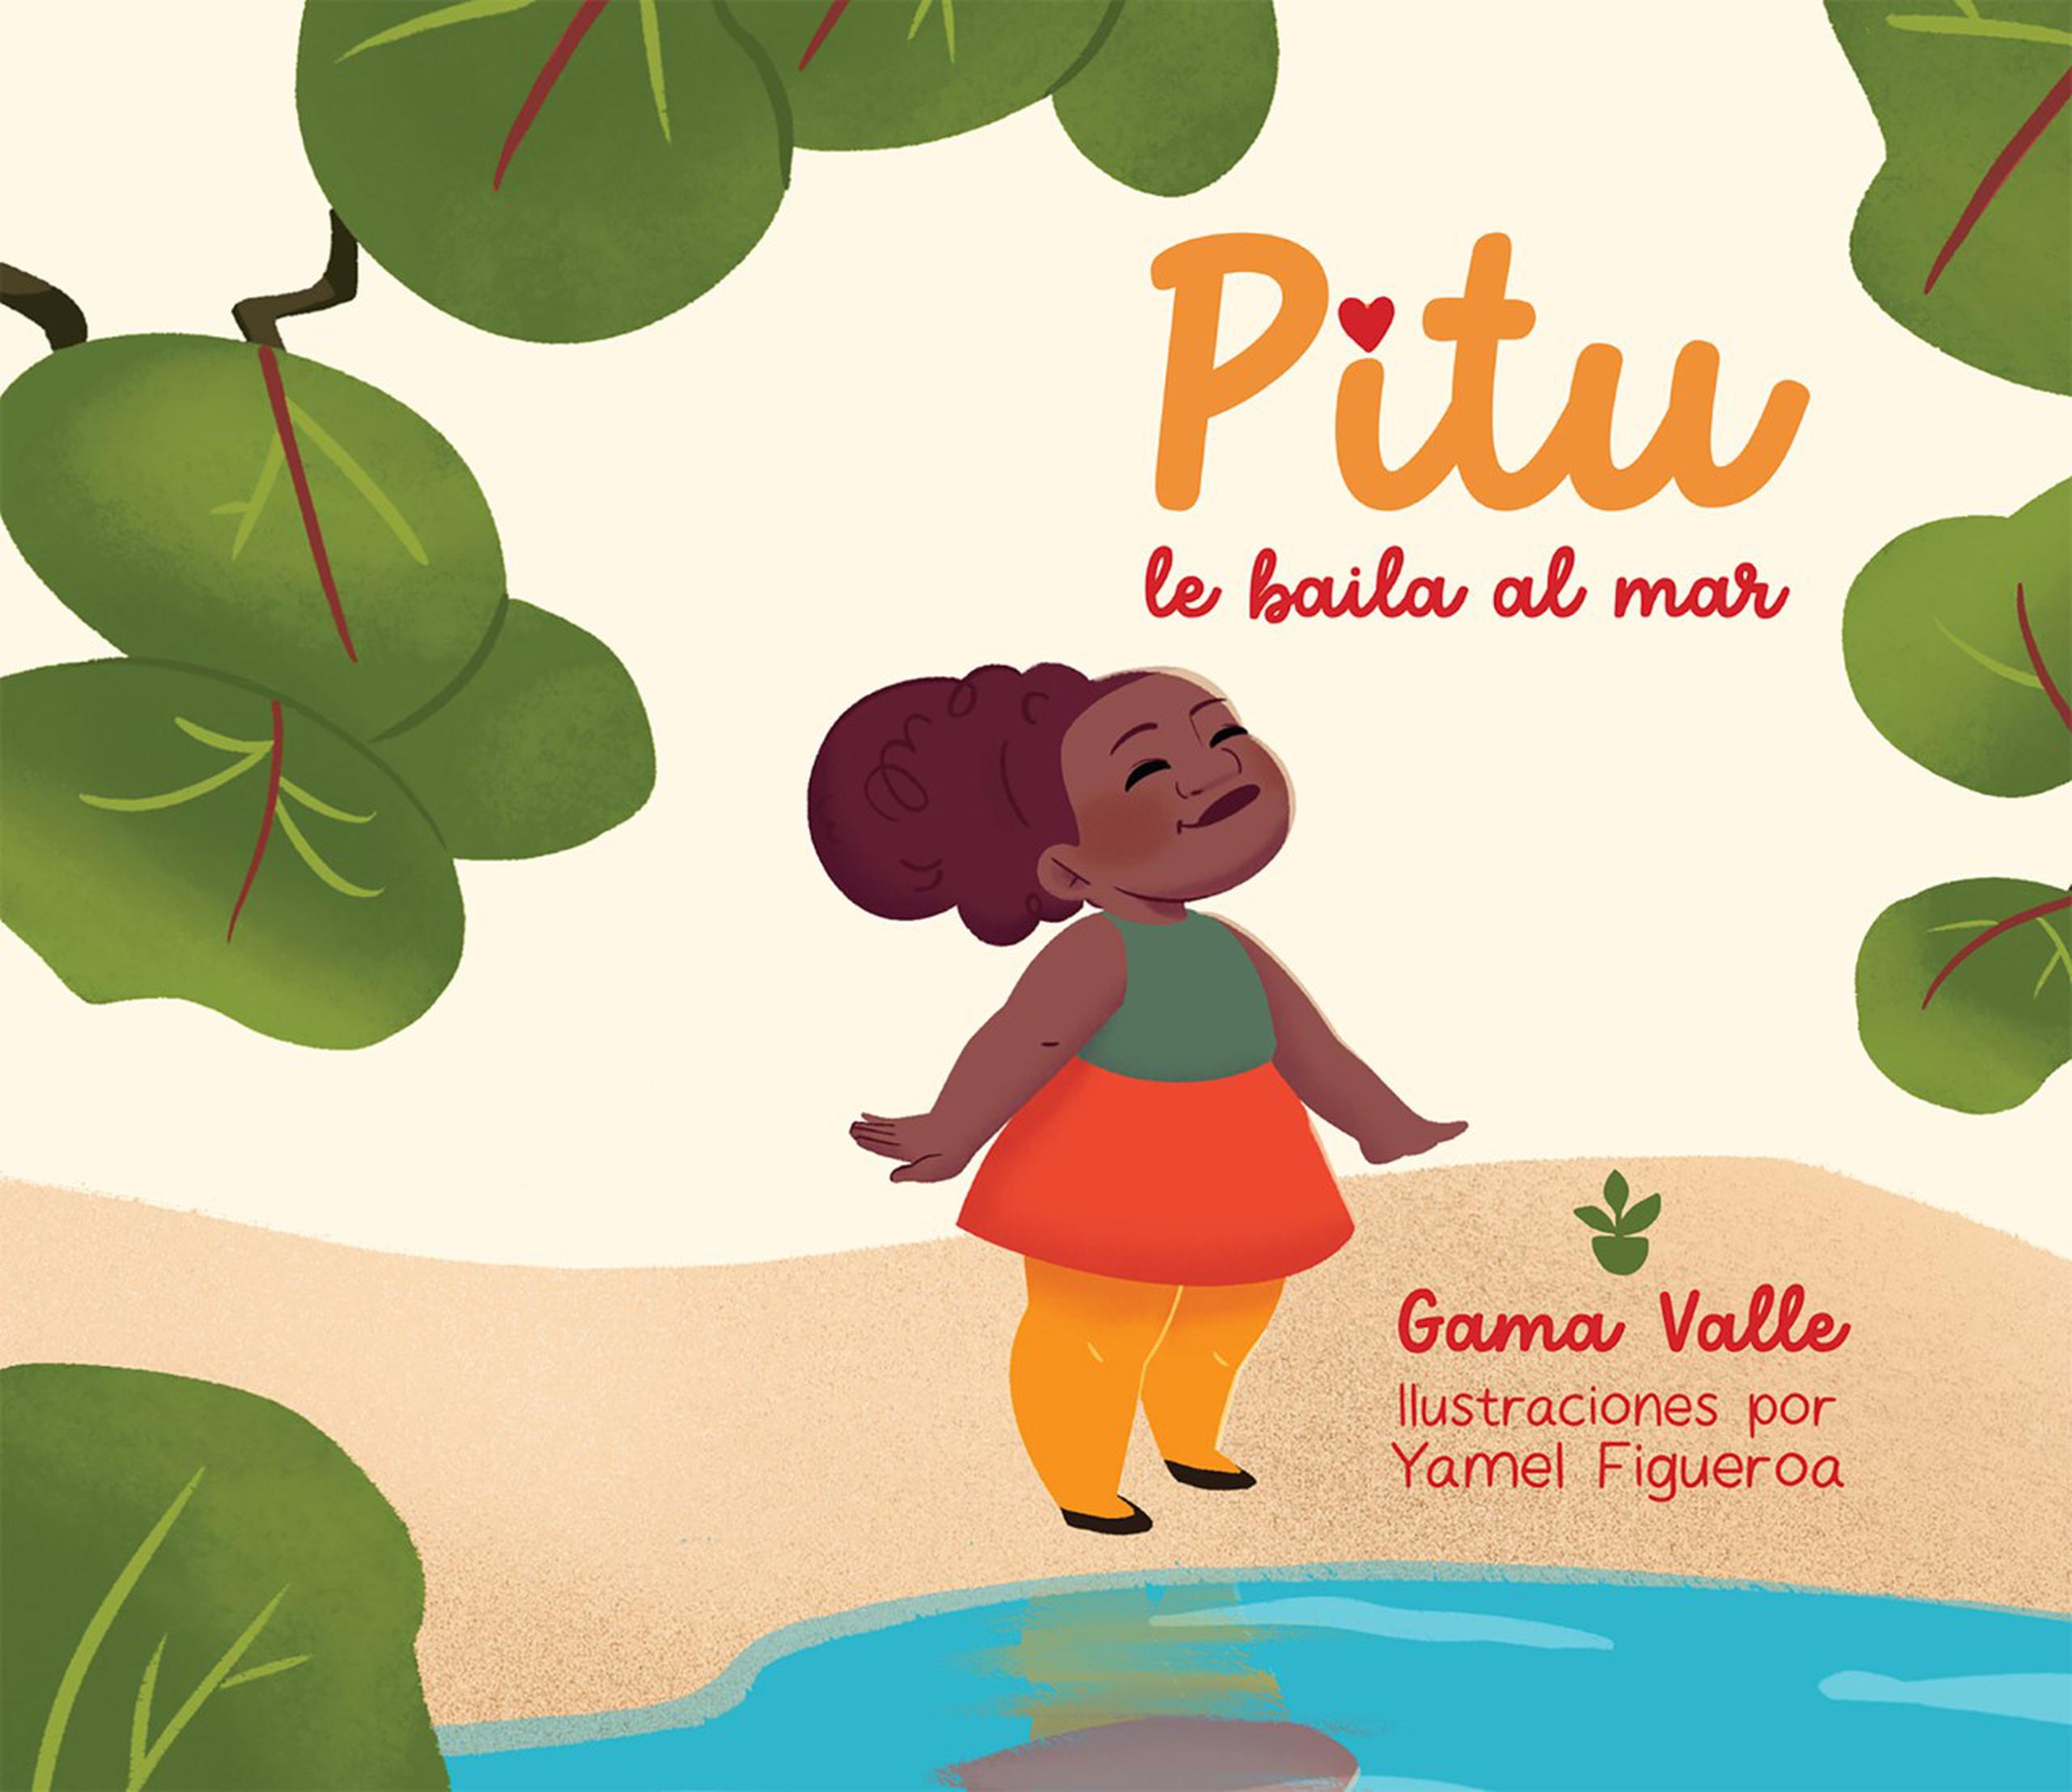 El cuento "Pitu le baila al mar" ganó  la Medalla del Oro en la categoría de Mejor libro de temática LGBTQ+.